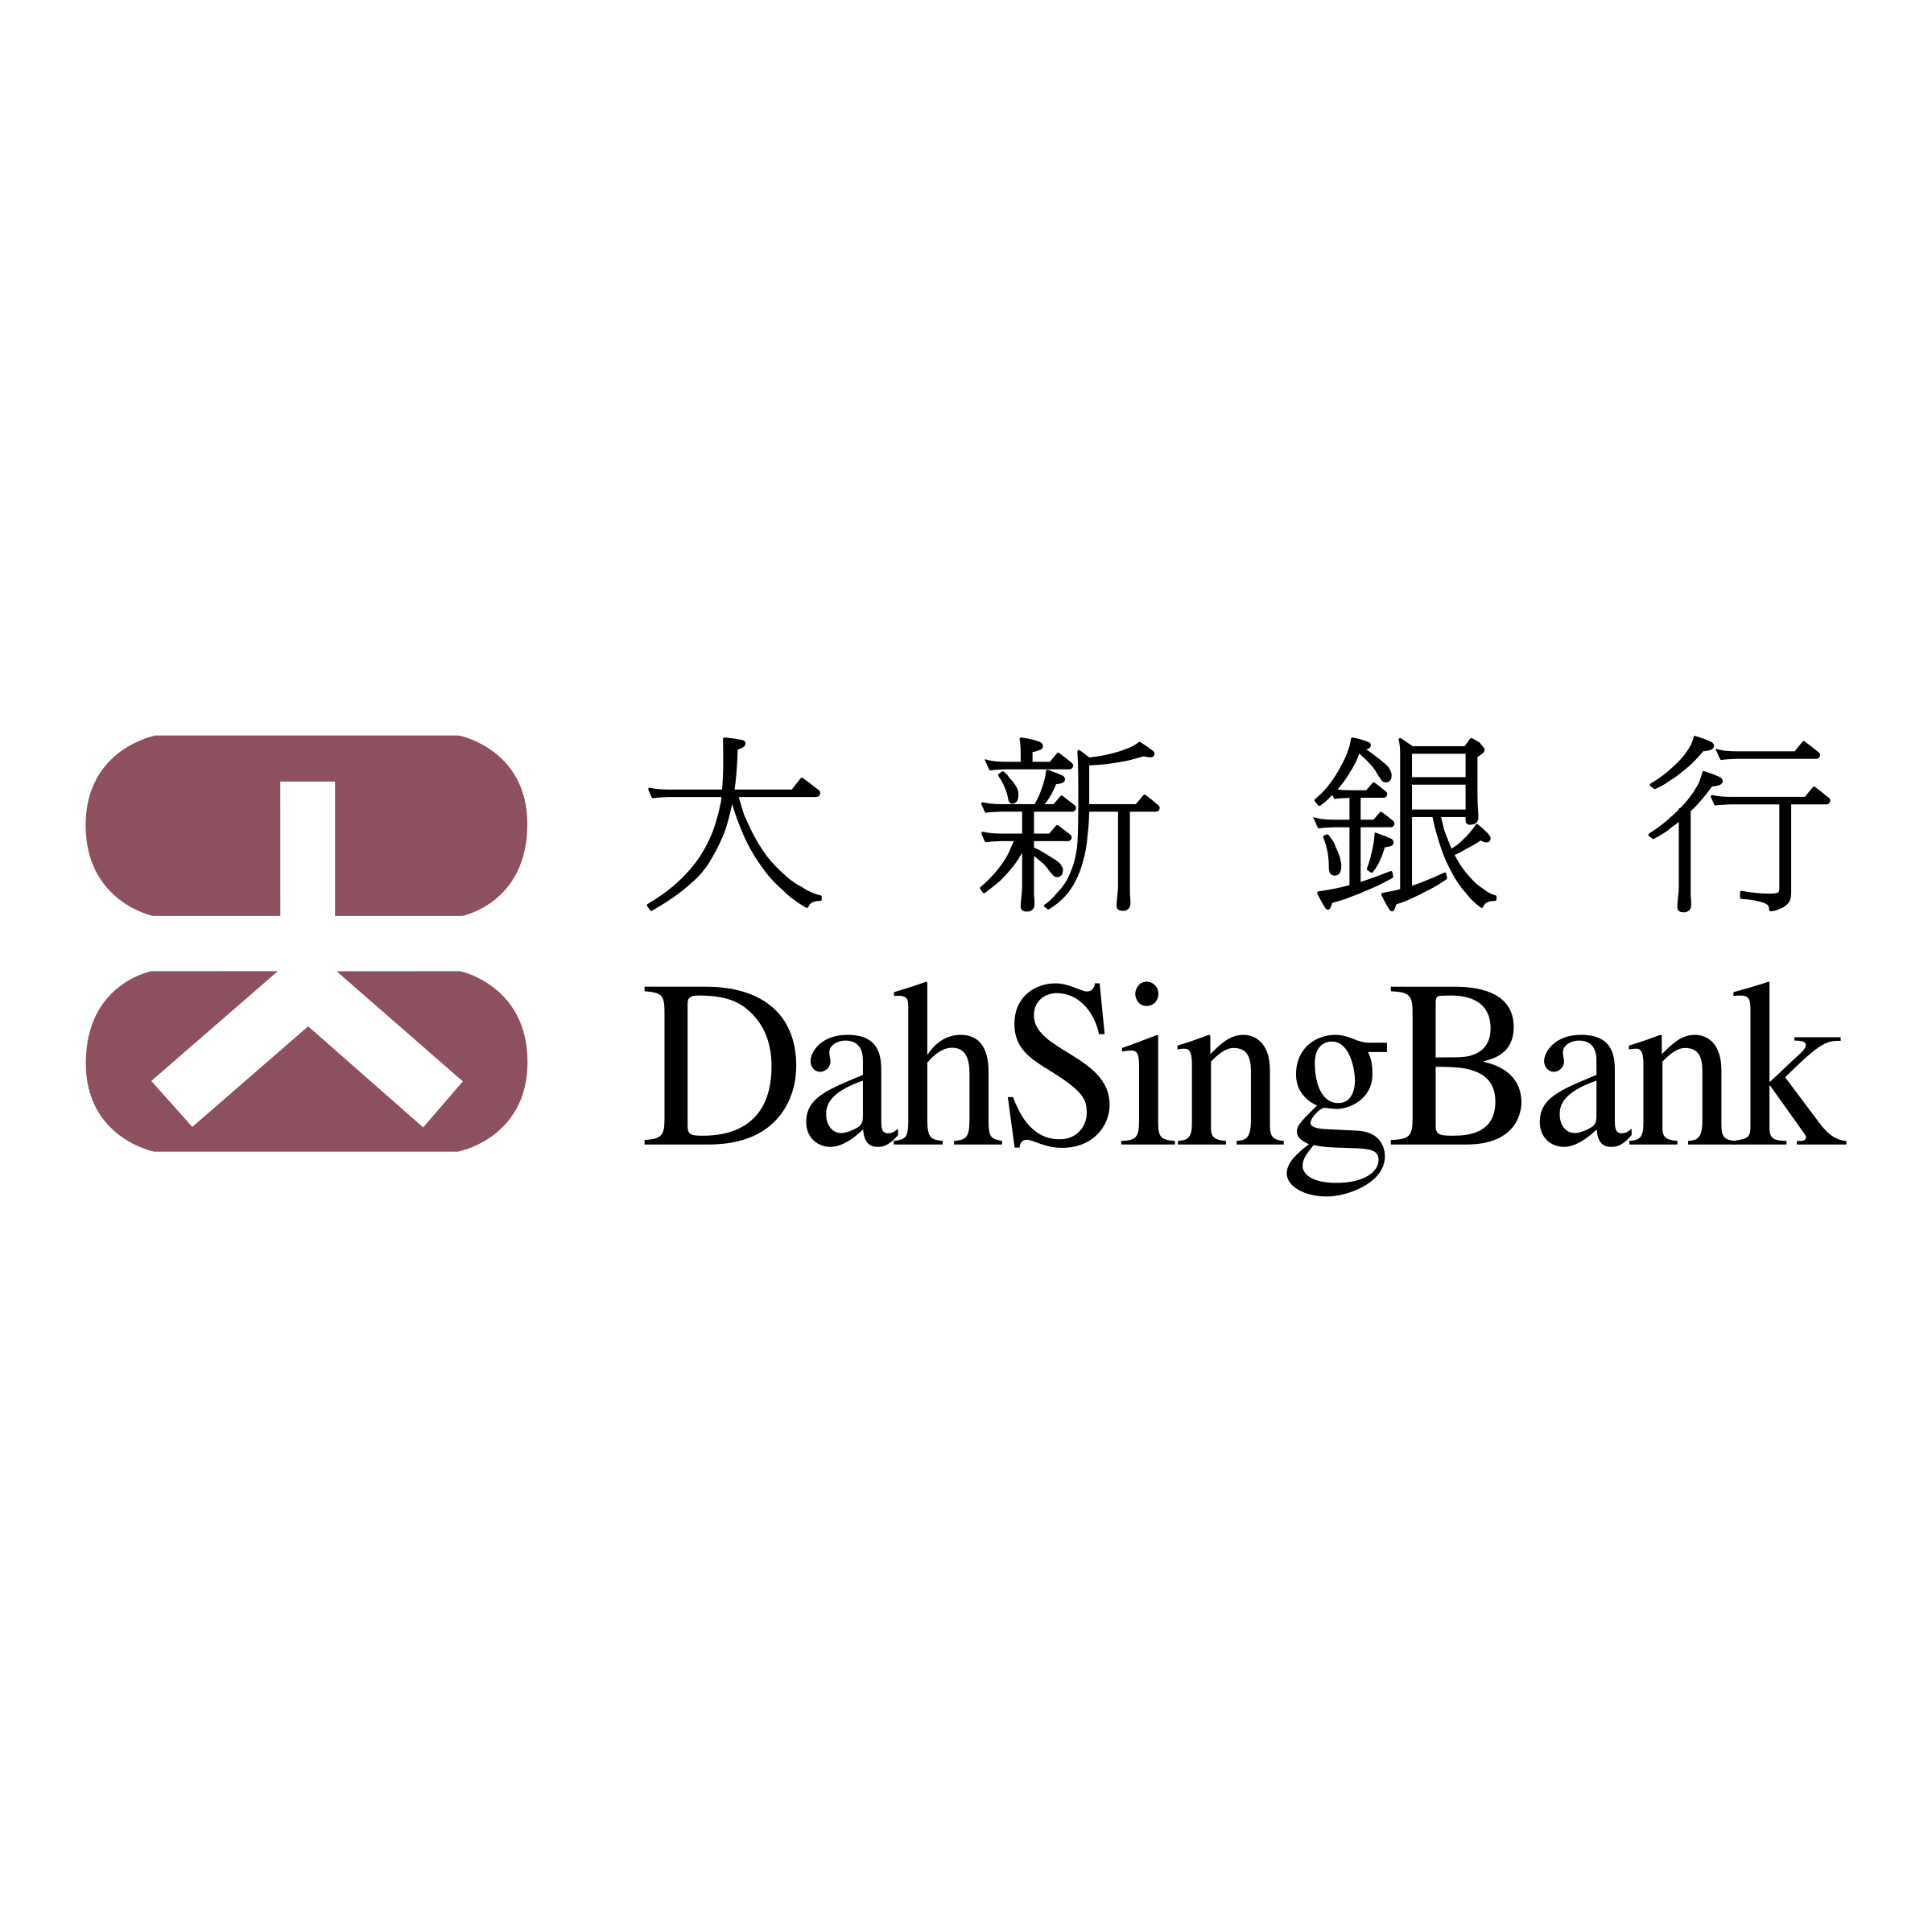 Sing Logo - Dah Sing Bank Logo PNG Transparent & SVG Vector - Freebie Supply